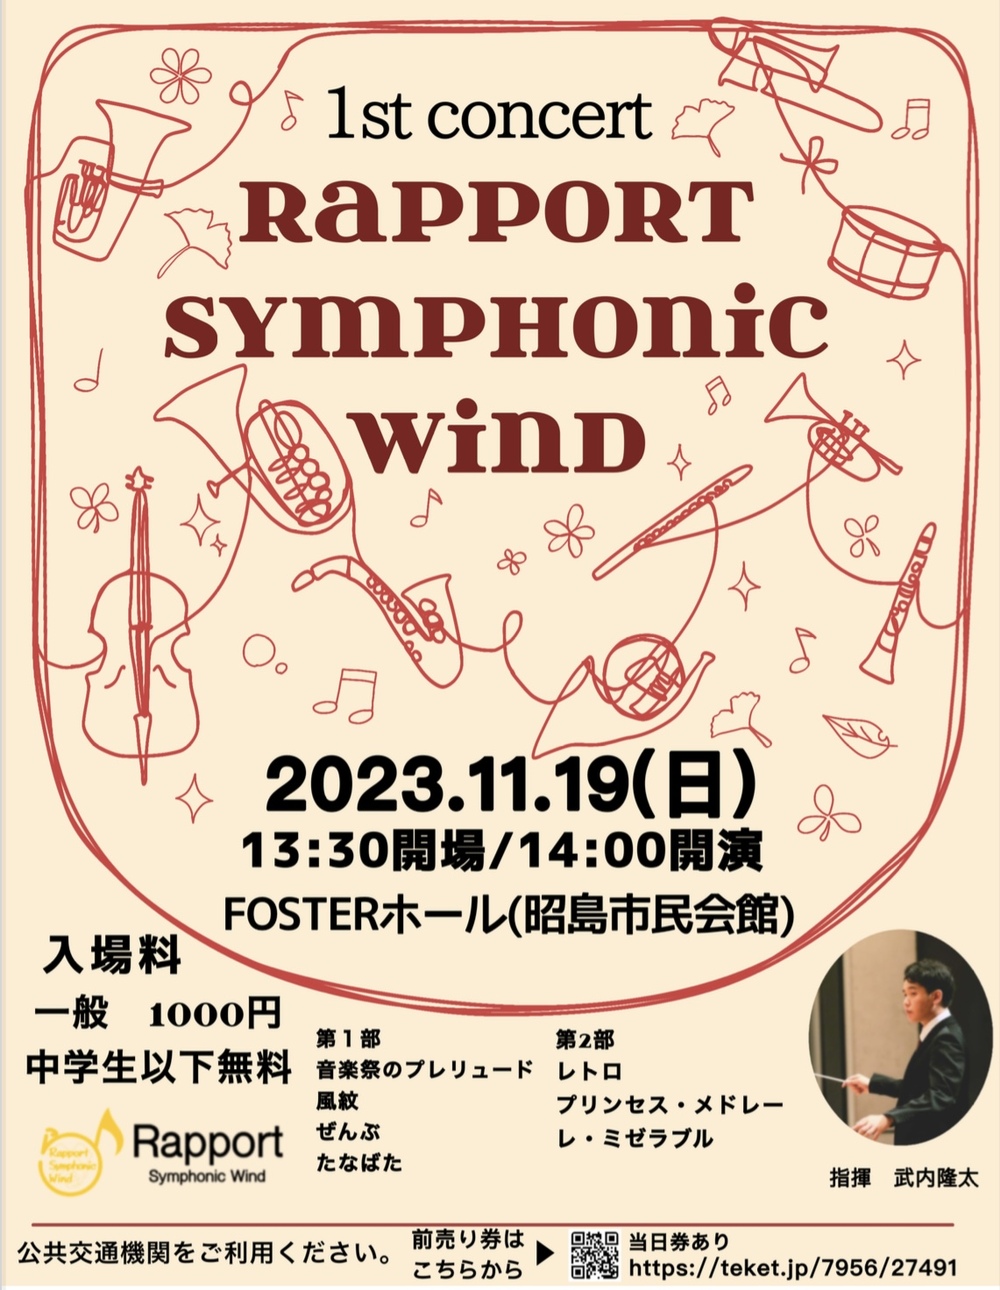 Rapport Symphonic Wind 1st Concert【Rapport Symphonic Wind 